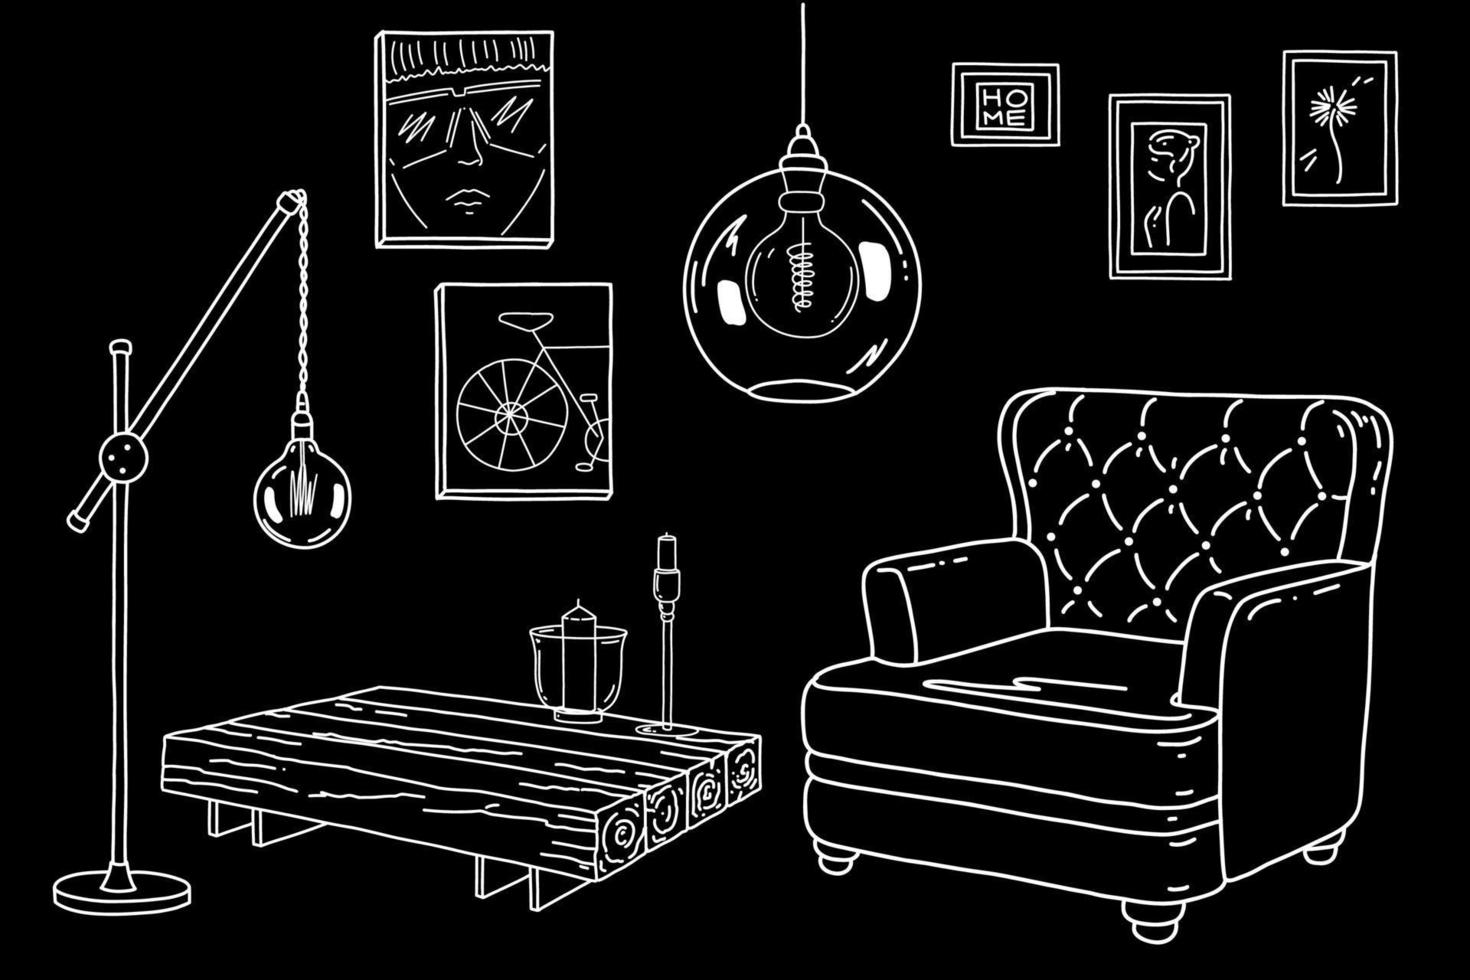 interiores de estilo industrial. vector de dibujo a mano. apartamento con sillón, mesa, lámpara, marco en la pared.